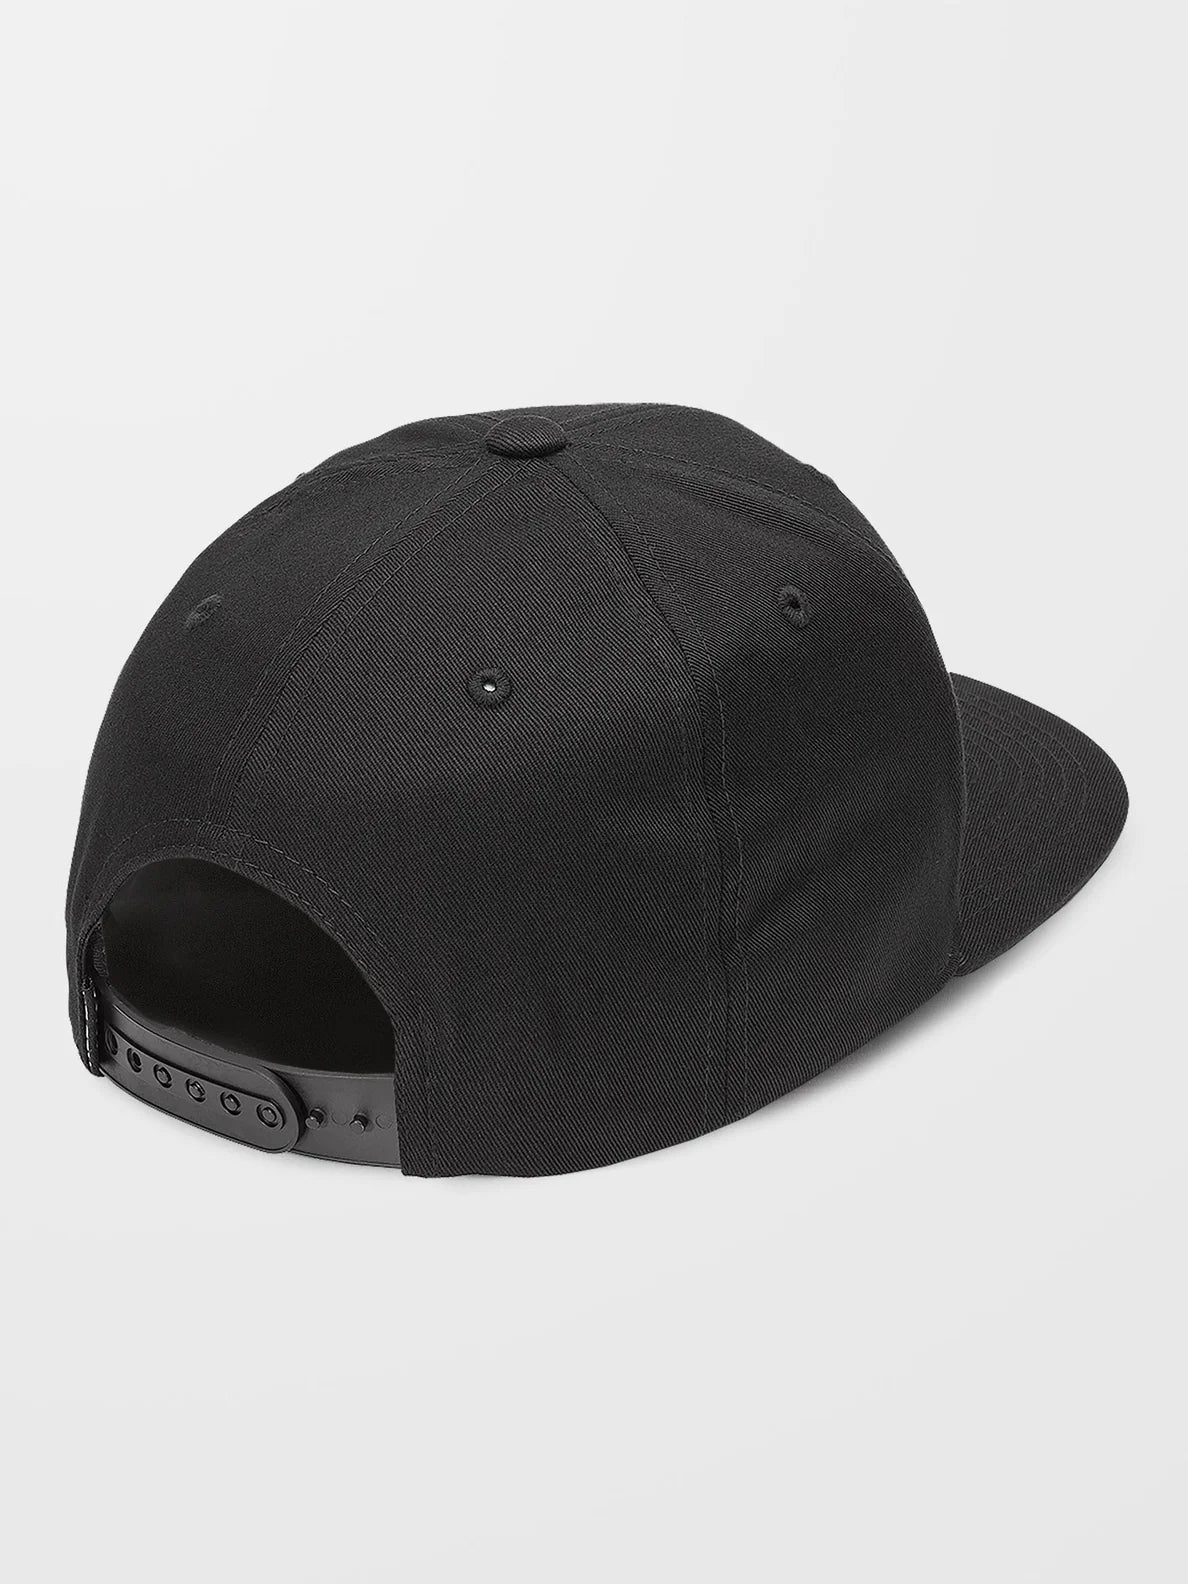 Volcom Quarter Twill Cap - Black-Headwear-troggs.com